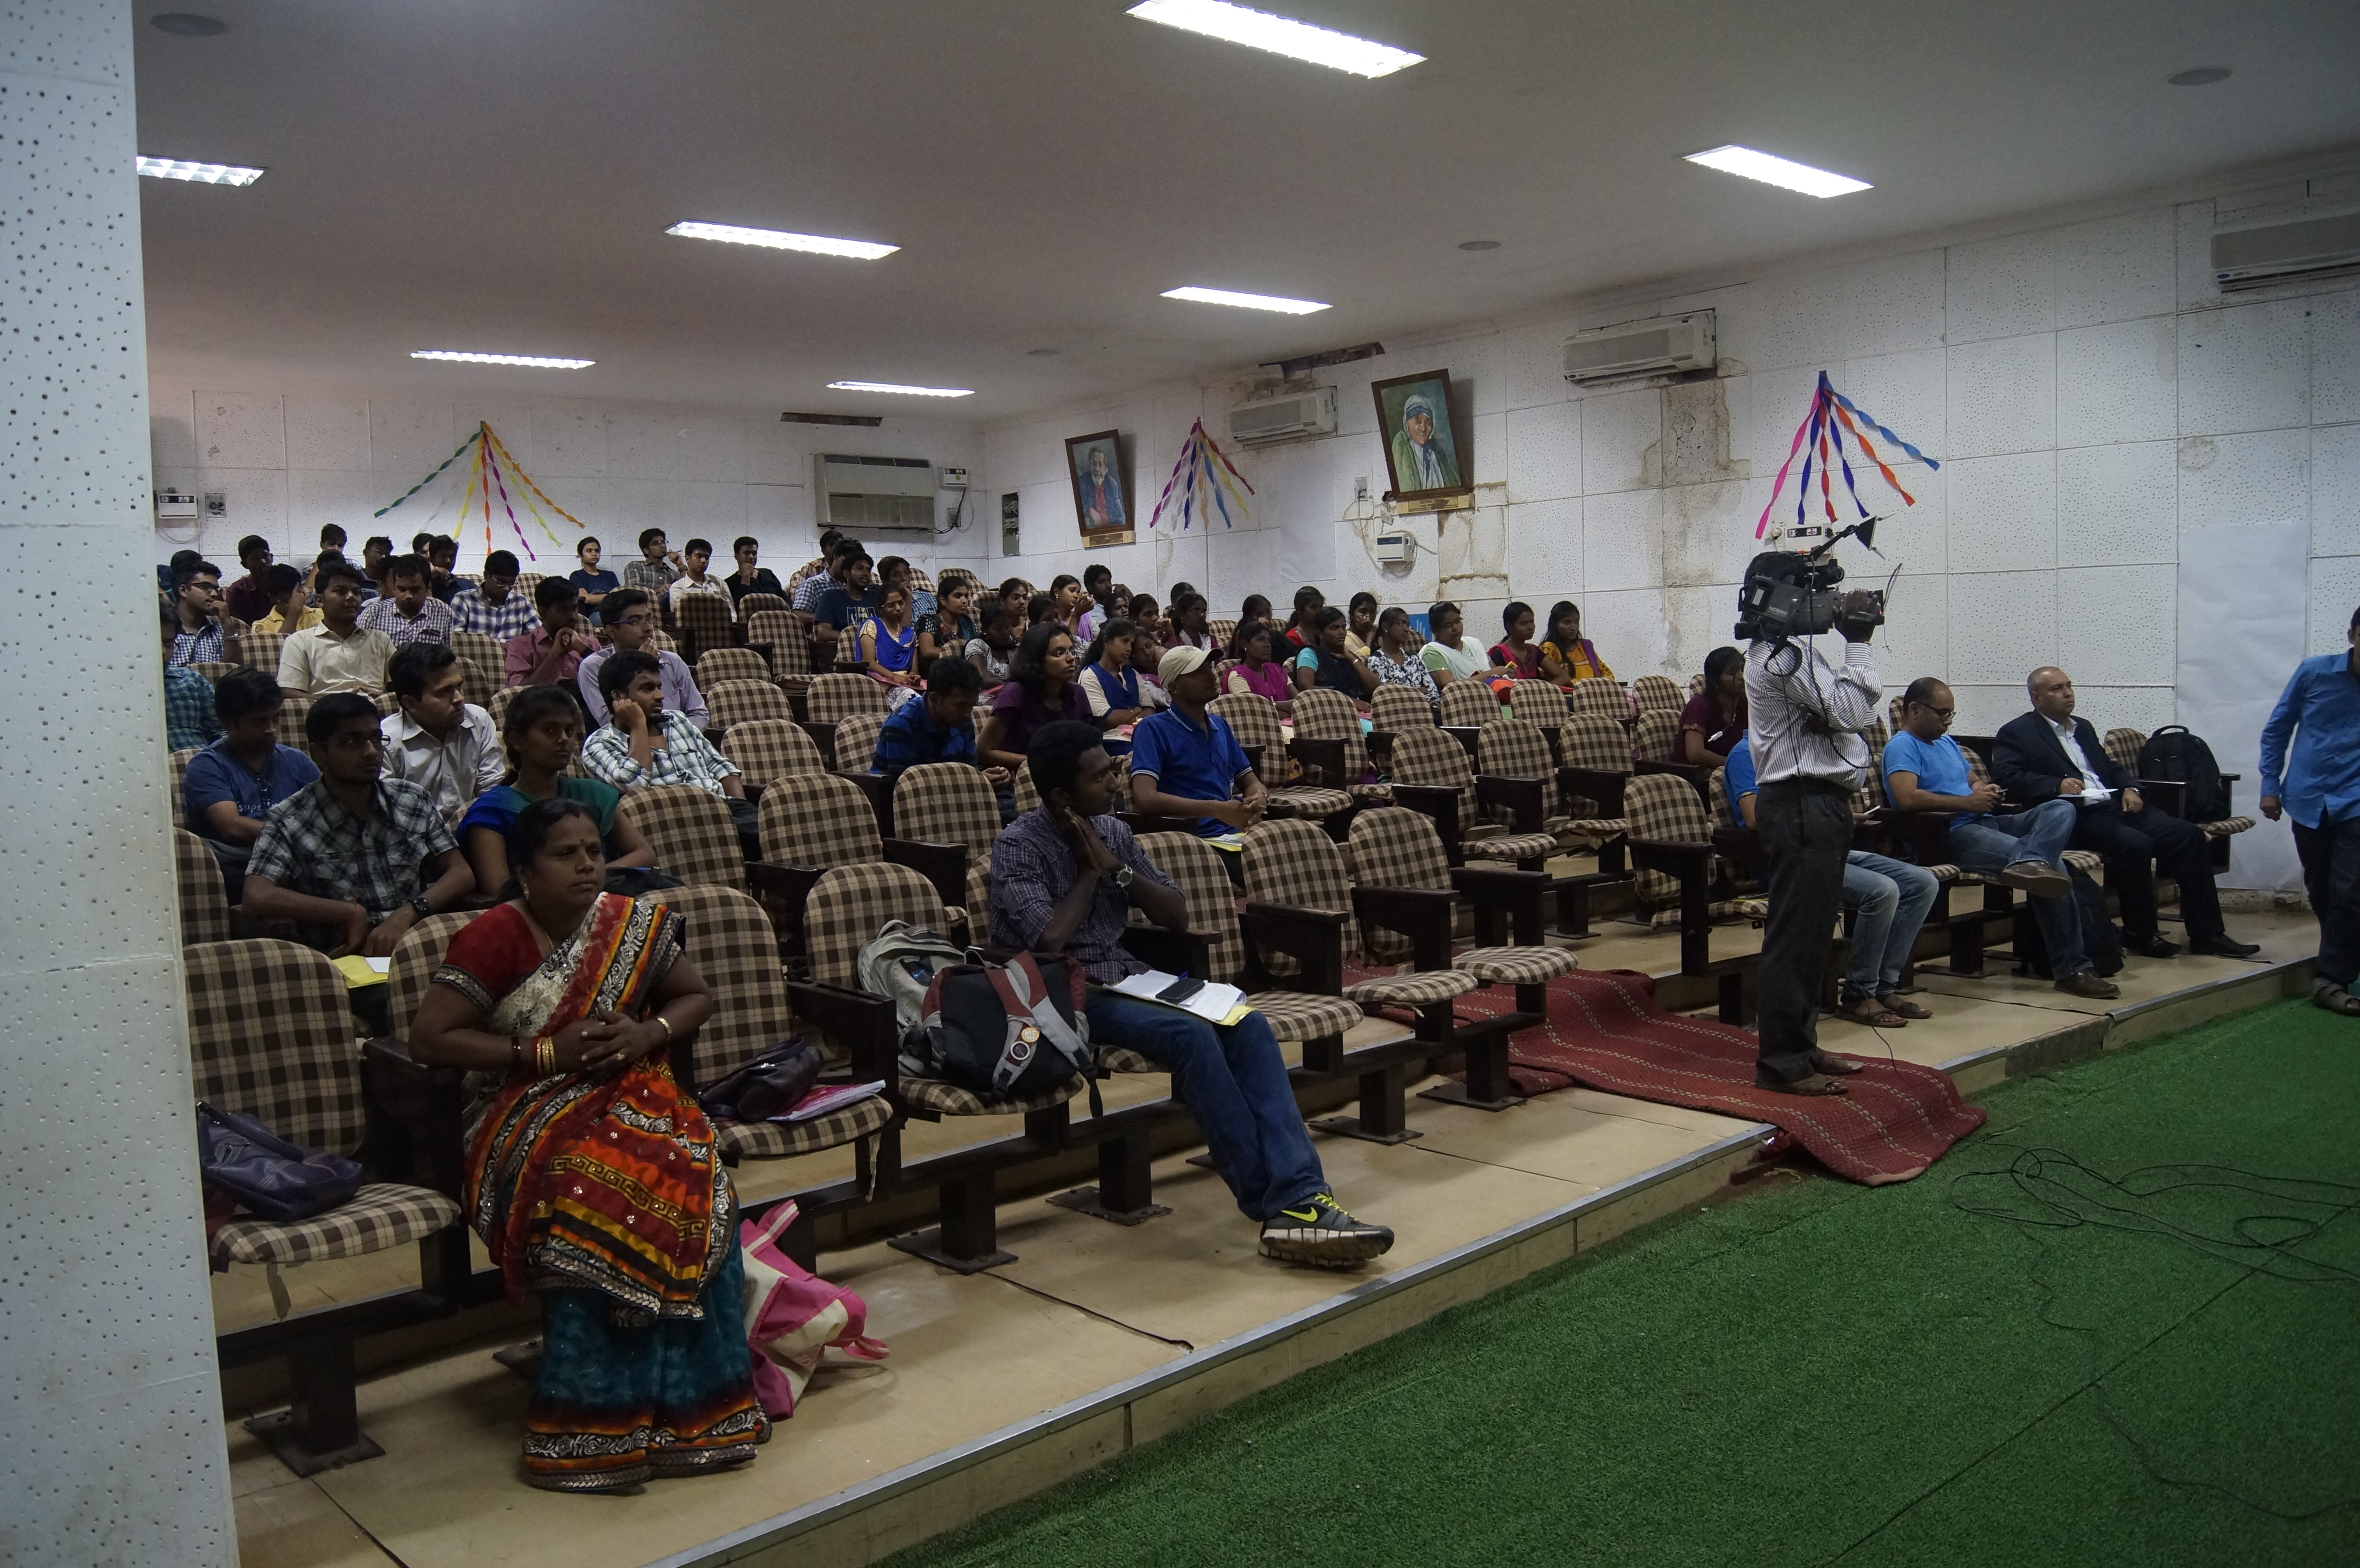 Thinking Social Seminar Tiruchirapalli